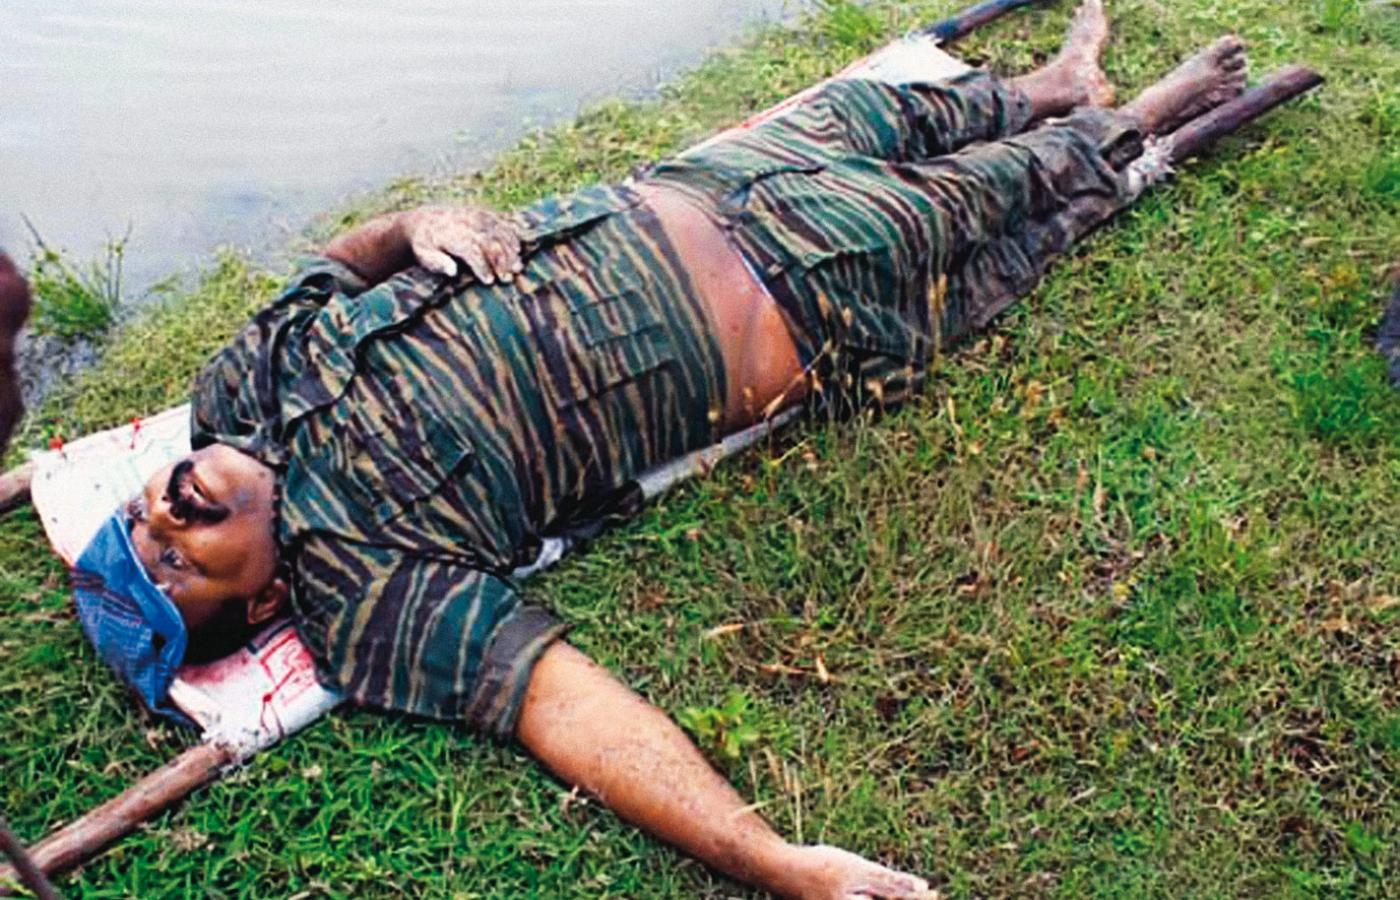 Vellupillai Prabhakaran,  przywódca Tamilskich Tygrysów.  Został zastrzelony w 2009 r.  Zdjęcie jego zwłok rząd pokazał  w ogólnokrajowej telewizji.